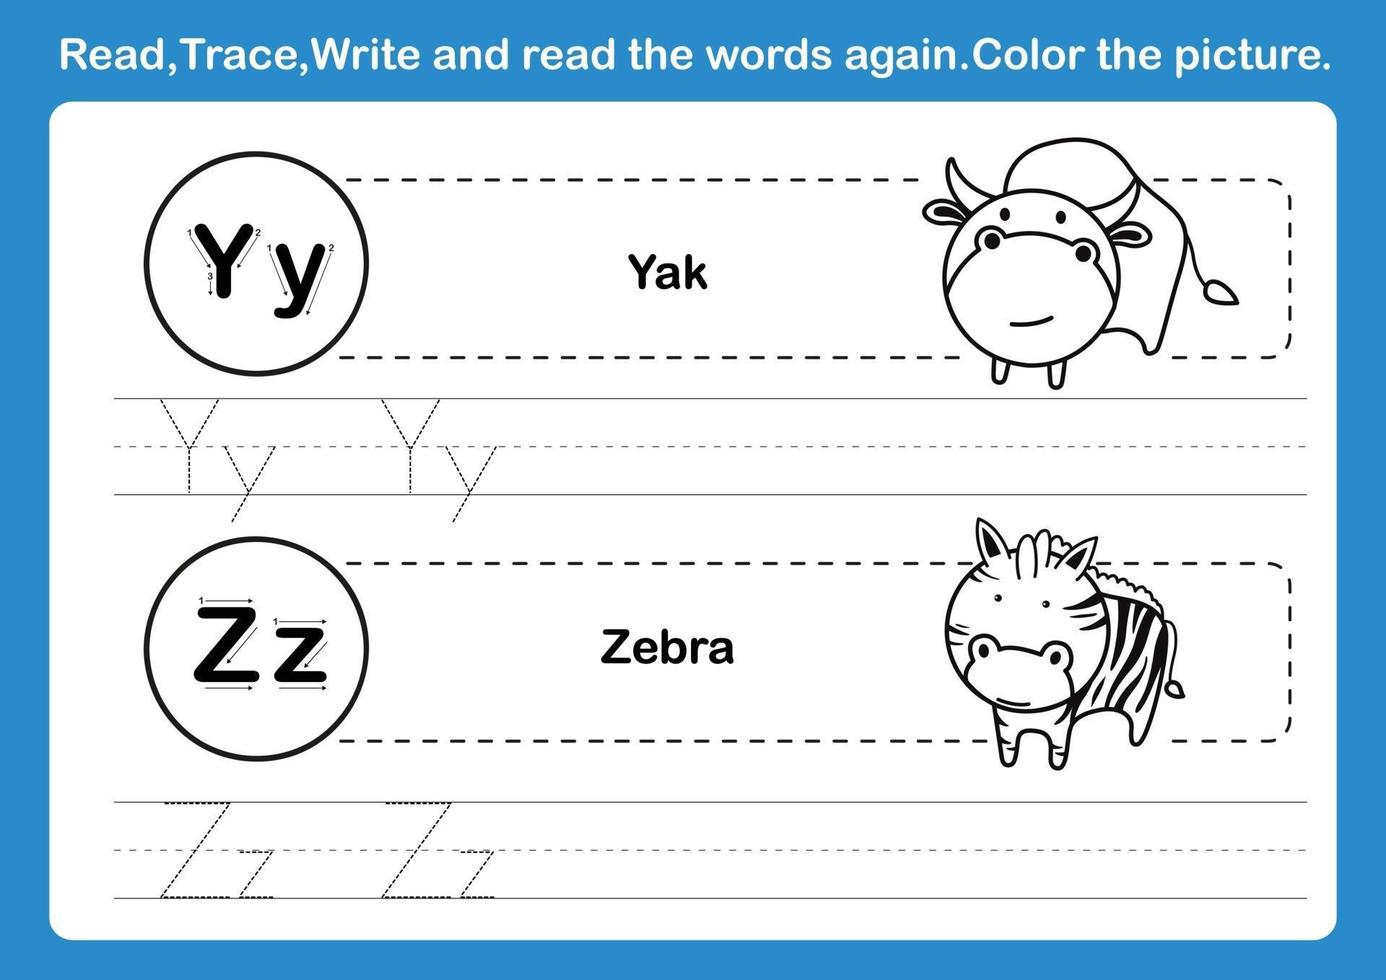 Ejercicio de alfabeto yz con vocabulario de dibujos animados para colorear vector de ilustración de libro